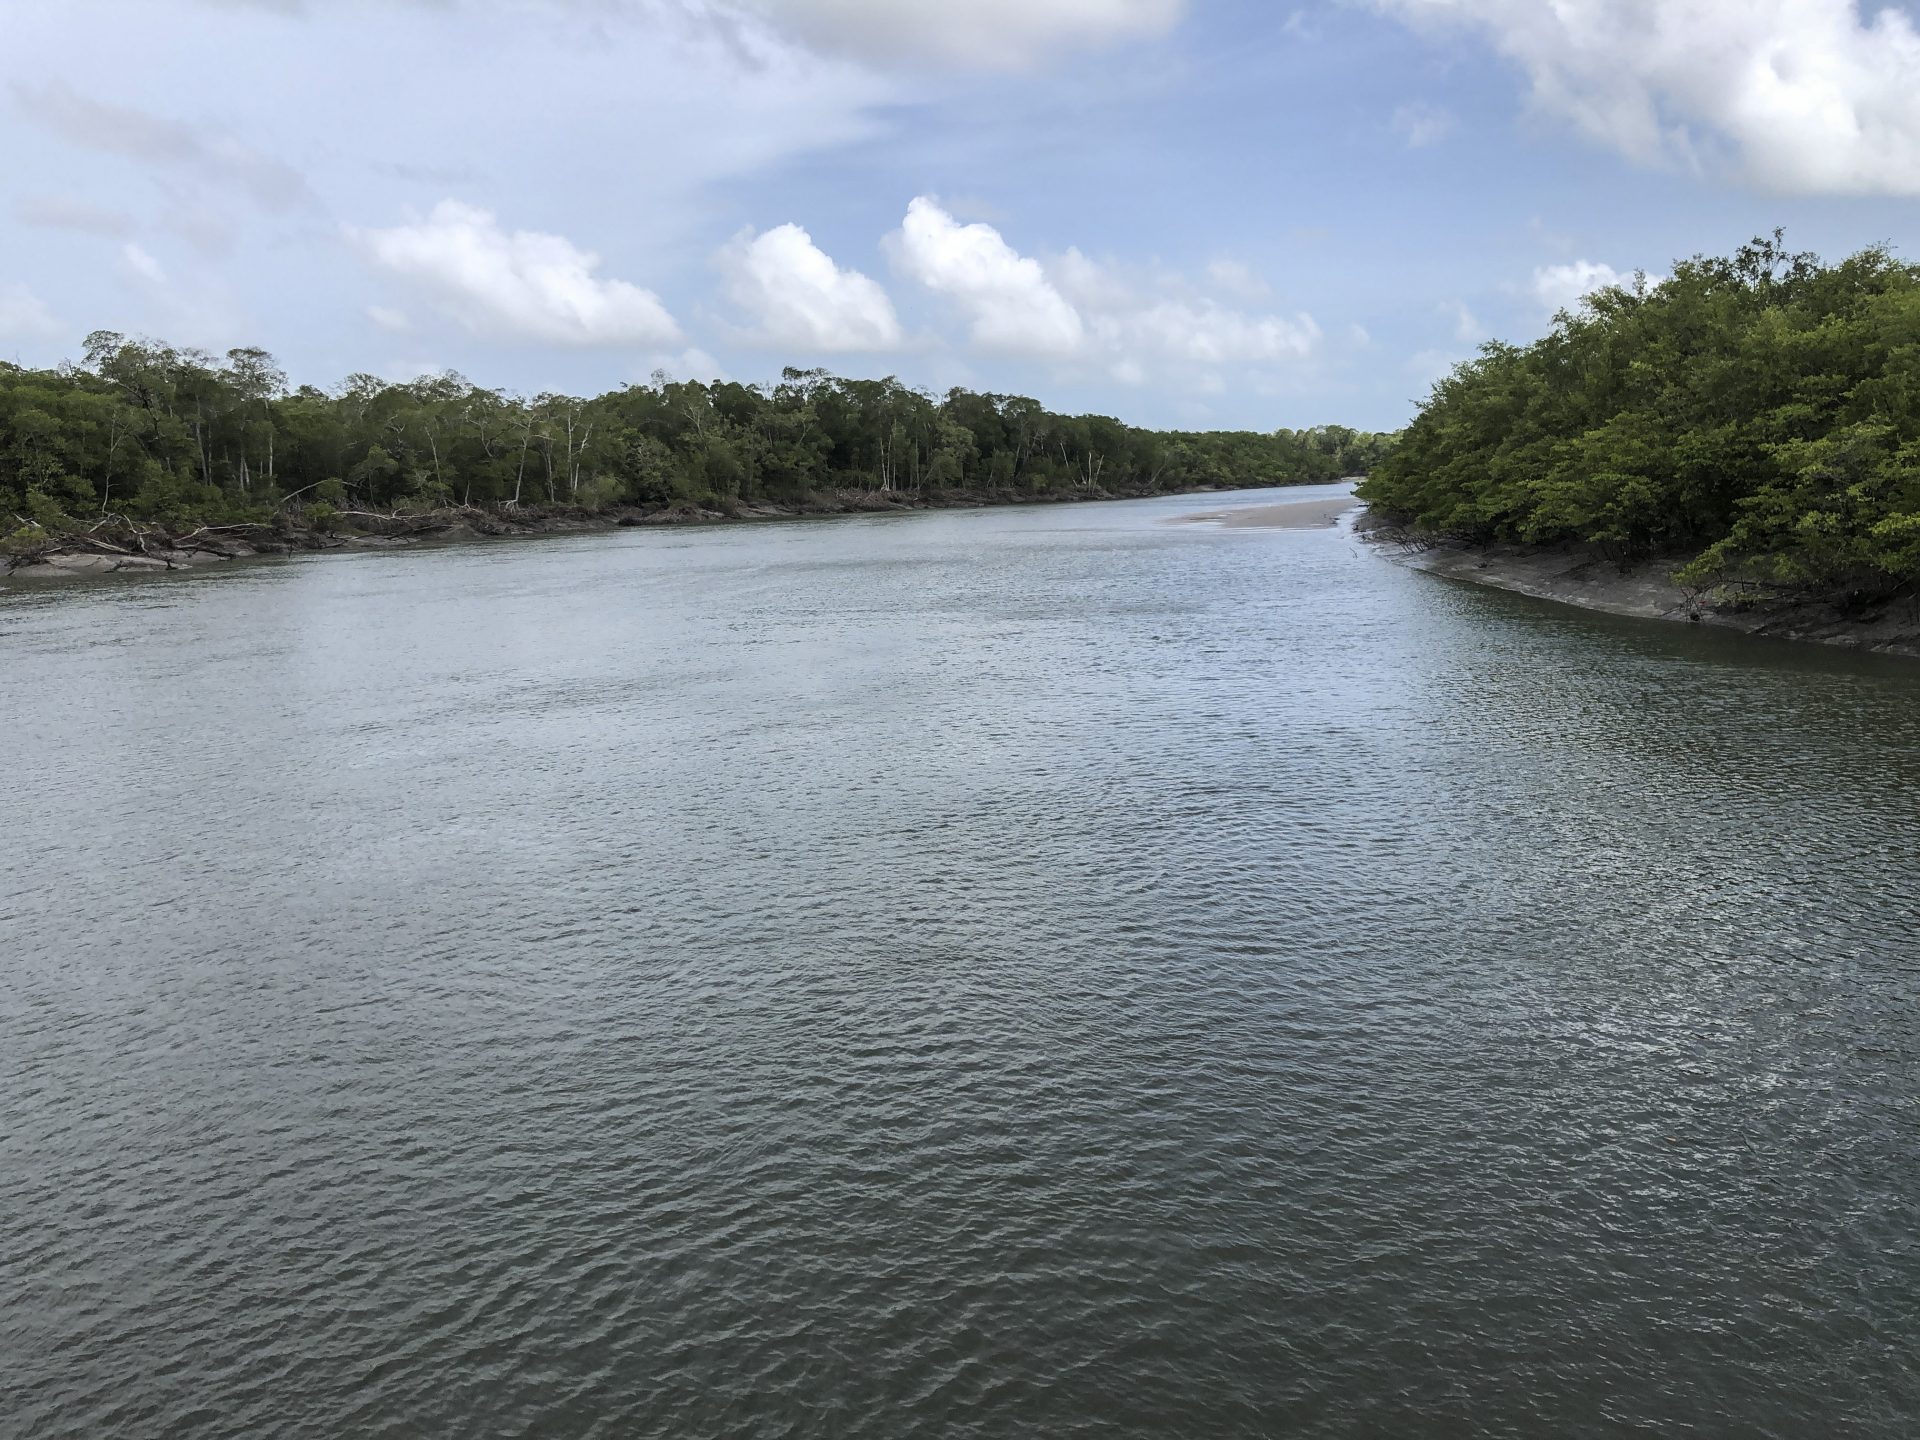 Fotografía cedida por Pedro Walfir Souza Filho, que muestra unos manglares en el municipio de Bragança, en el litoral del estado amazónico de Pará (Brasil). EFE/ Pedro Walfir Souza Filho